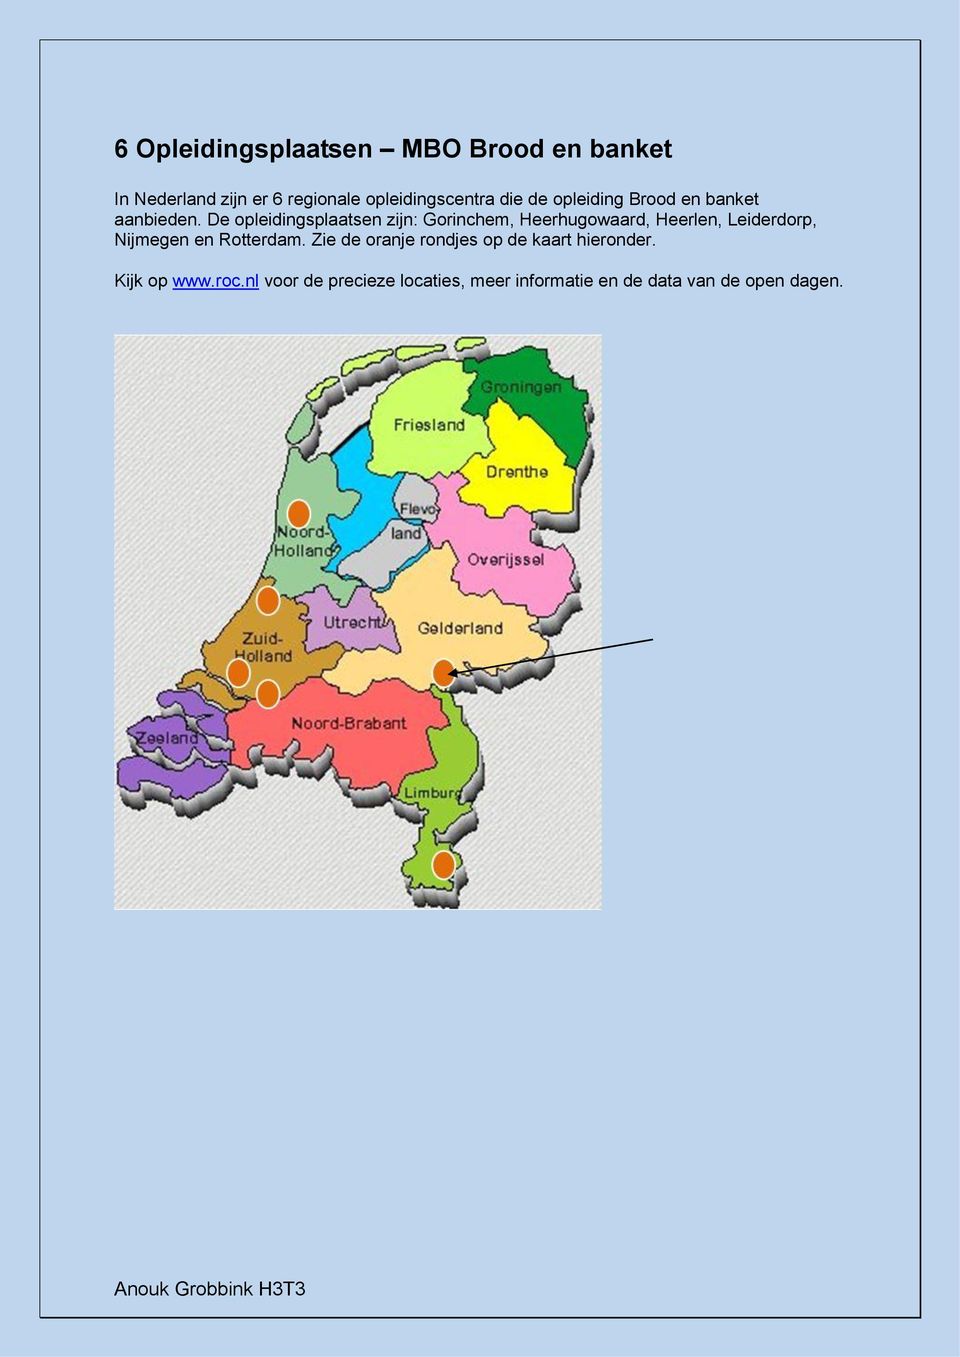 De opleidingsplaatsen zijn: Gorinchem, Heerhugowaard, Heerlen, Leiderdorp, Nijmegen en